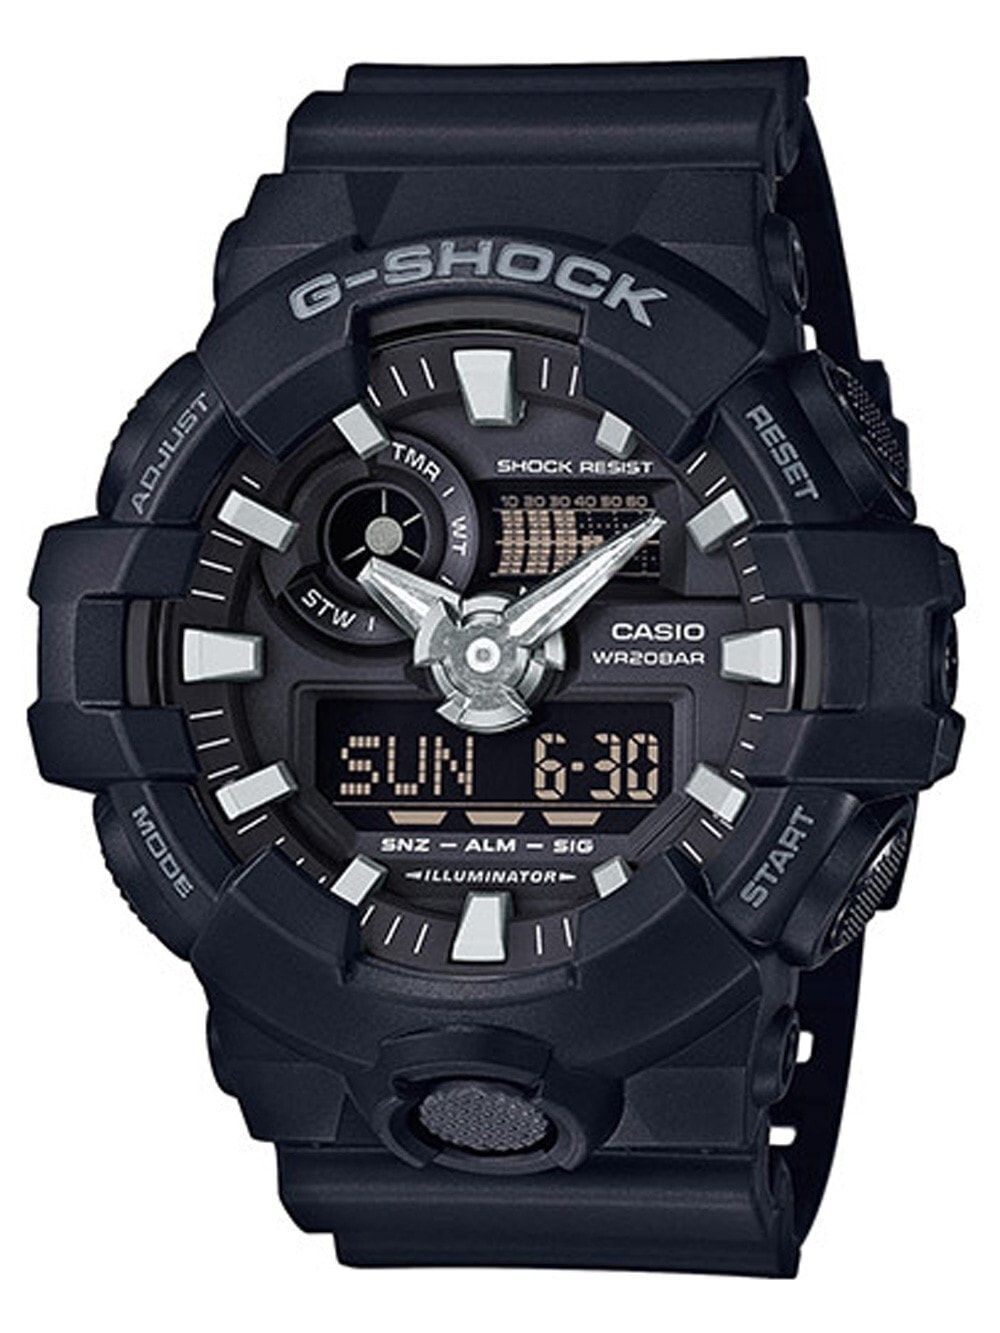 Мужские наручные часы с черным силиконовым ремешком CASIO GA-700-1BER G-SHOCK 53mm 20 ATM